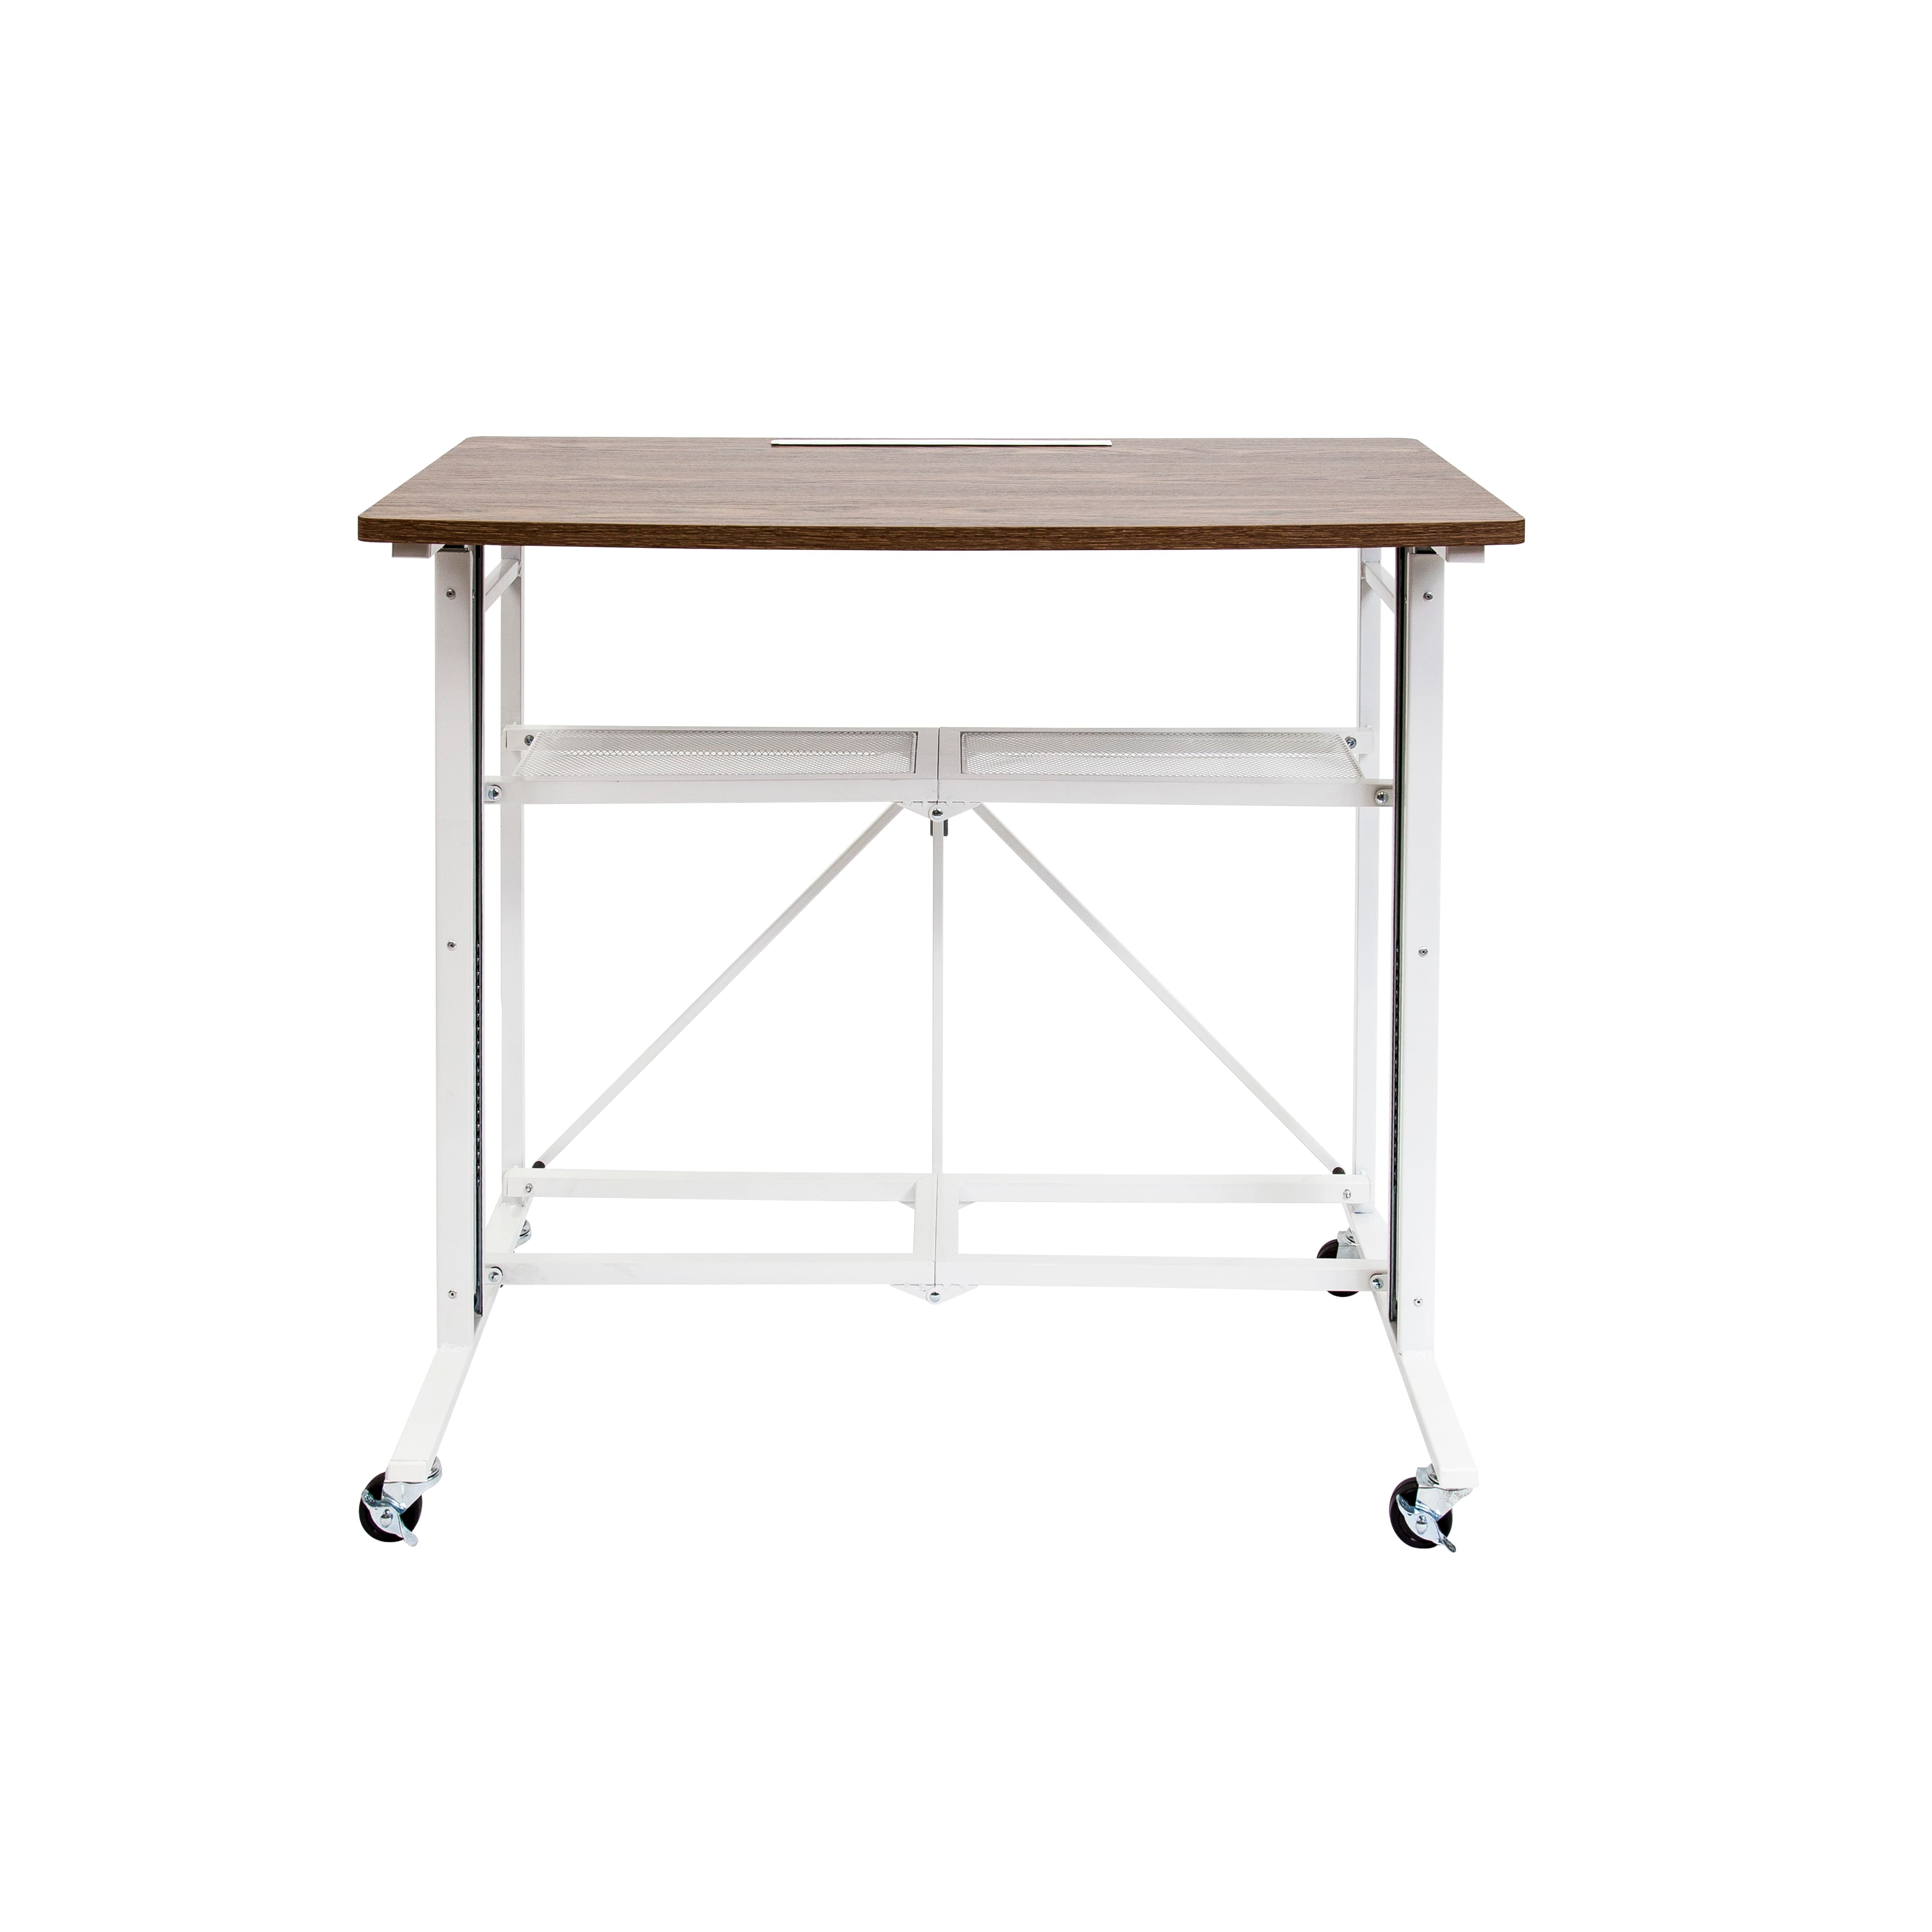 Adjustable SitStand FoldAway Desk & Workstation by Artist's Loft